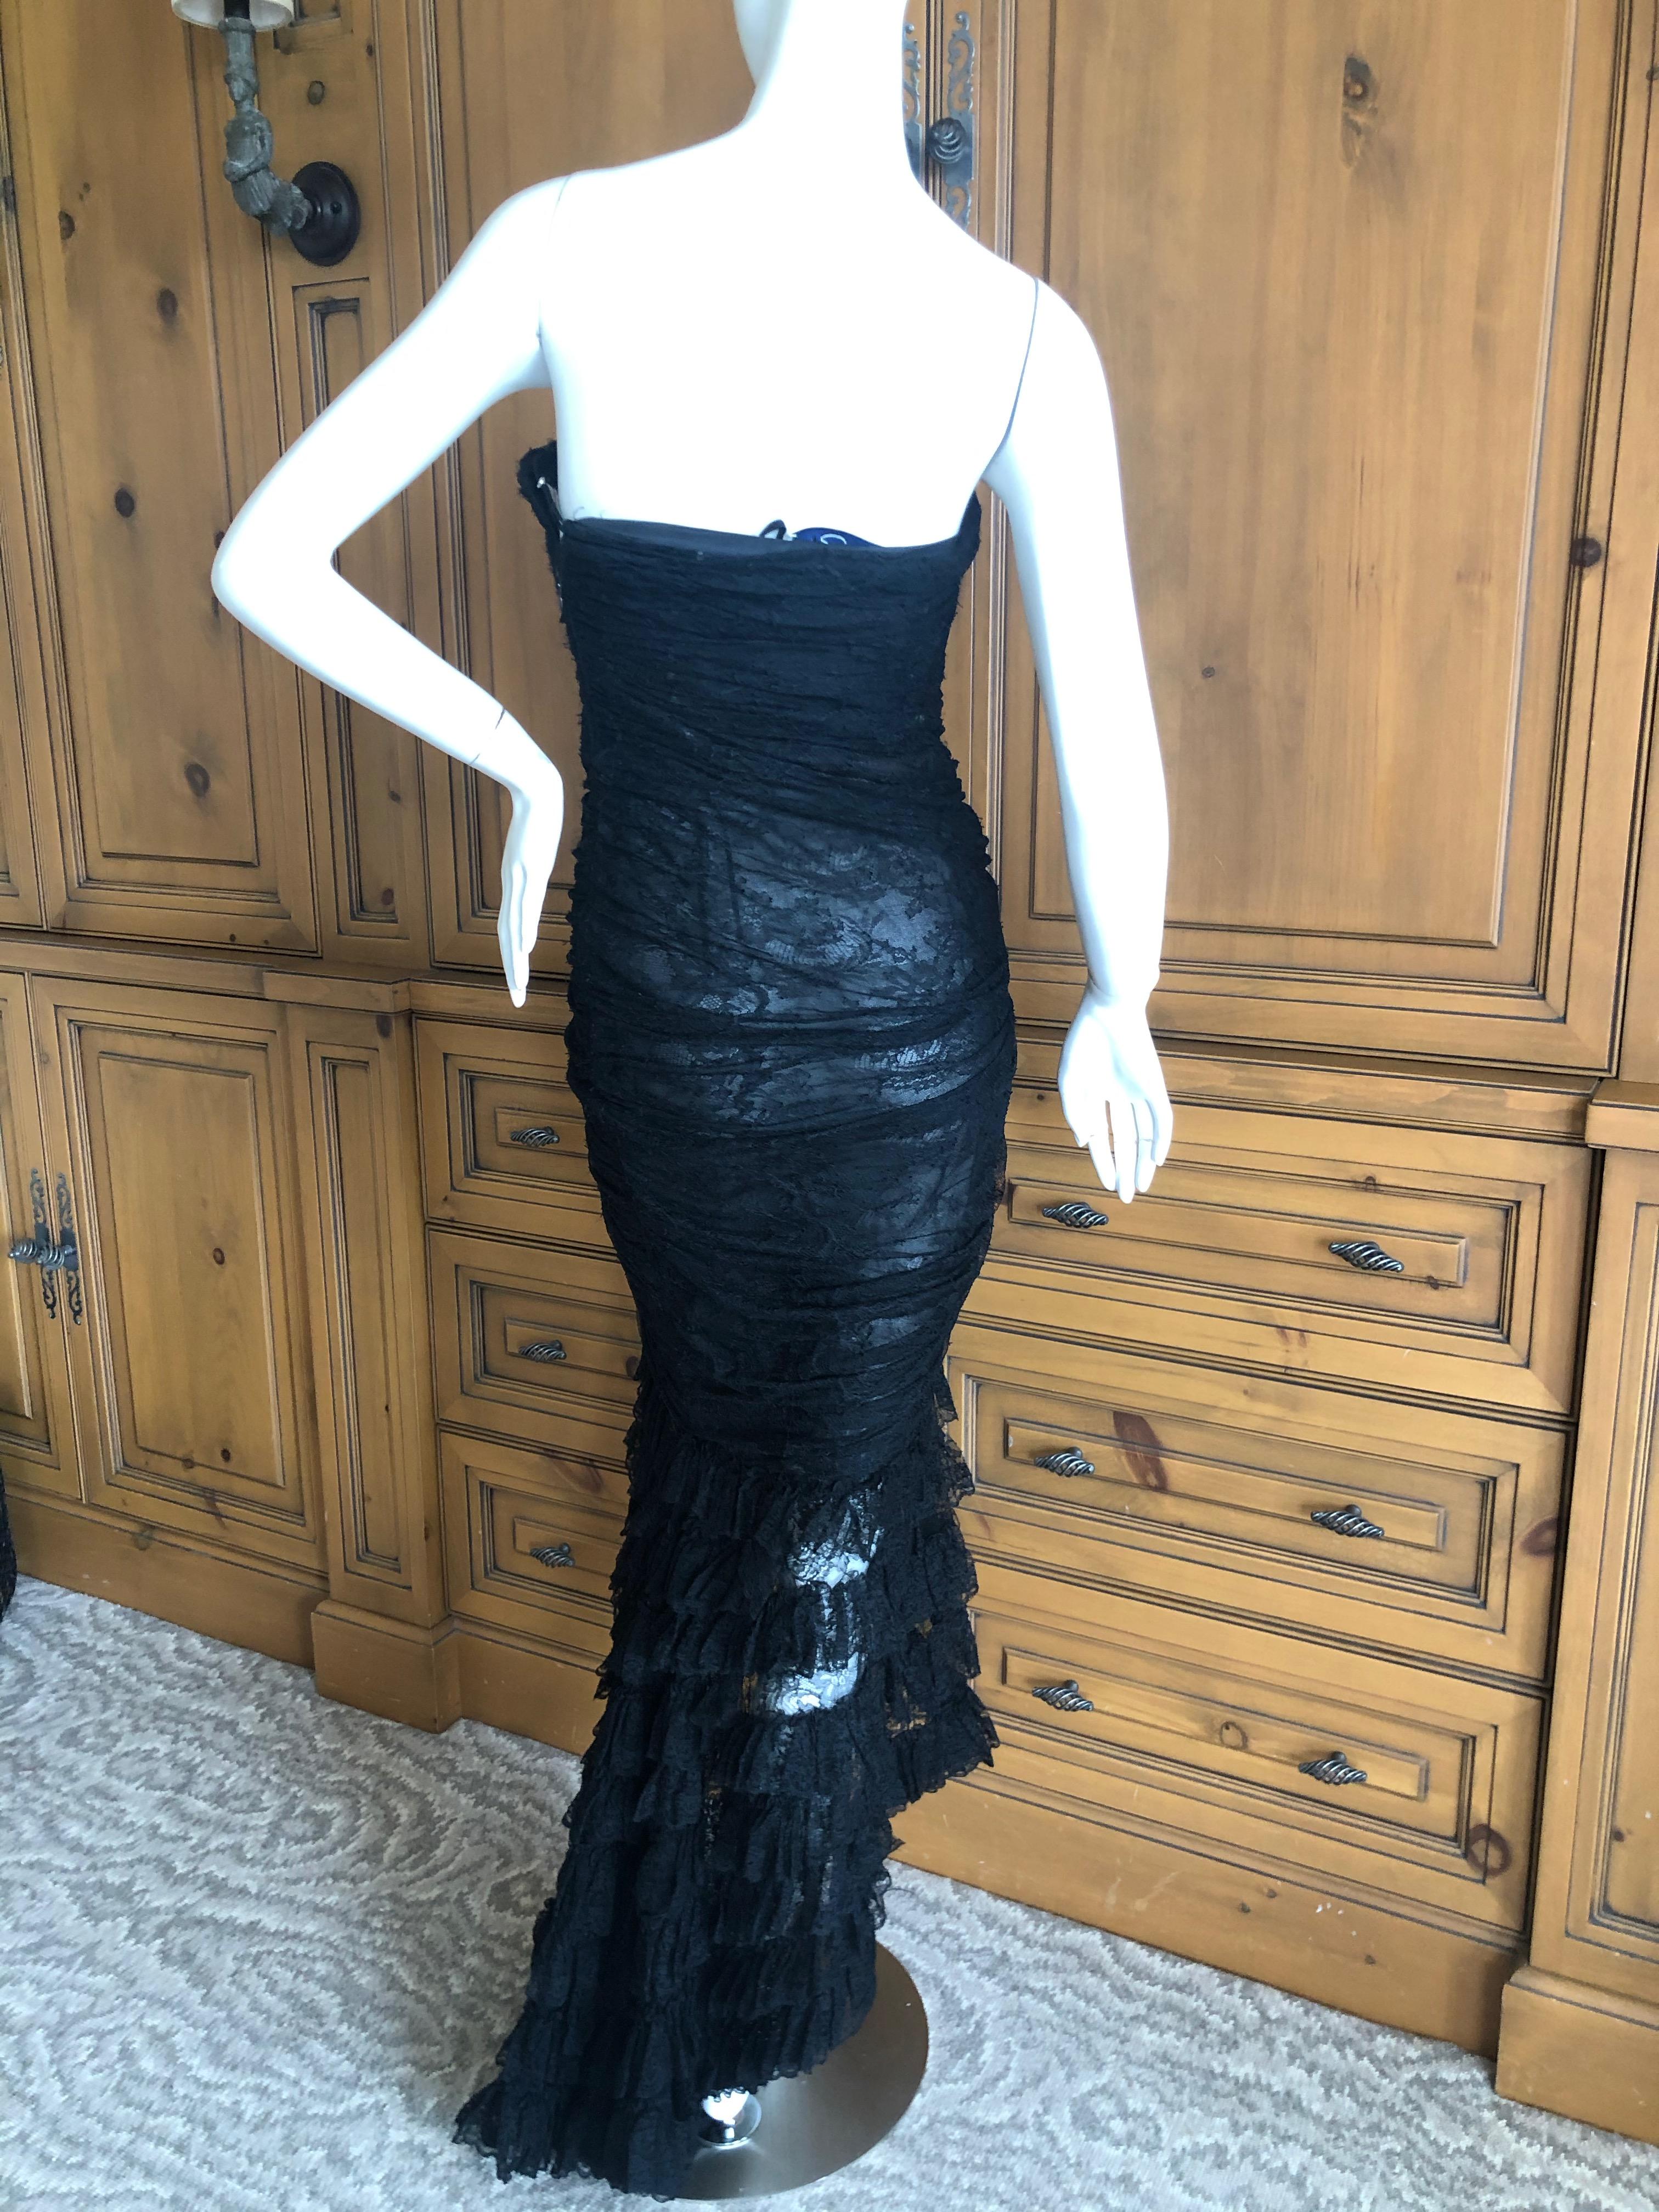  Oscar de la Renta Vintage 1980's Black Lace Evening Dress with Flamenco Ruffles For Sale 1